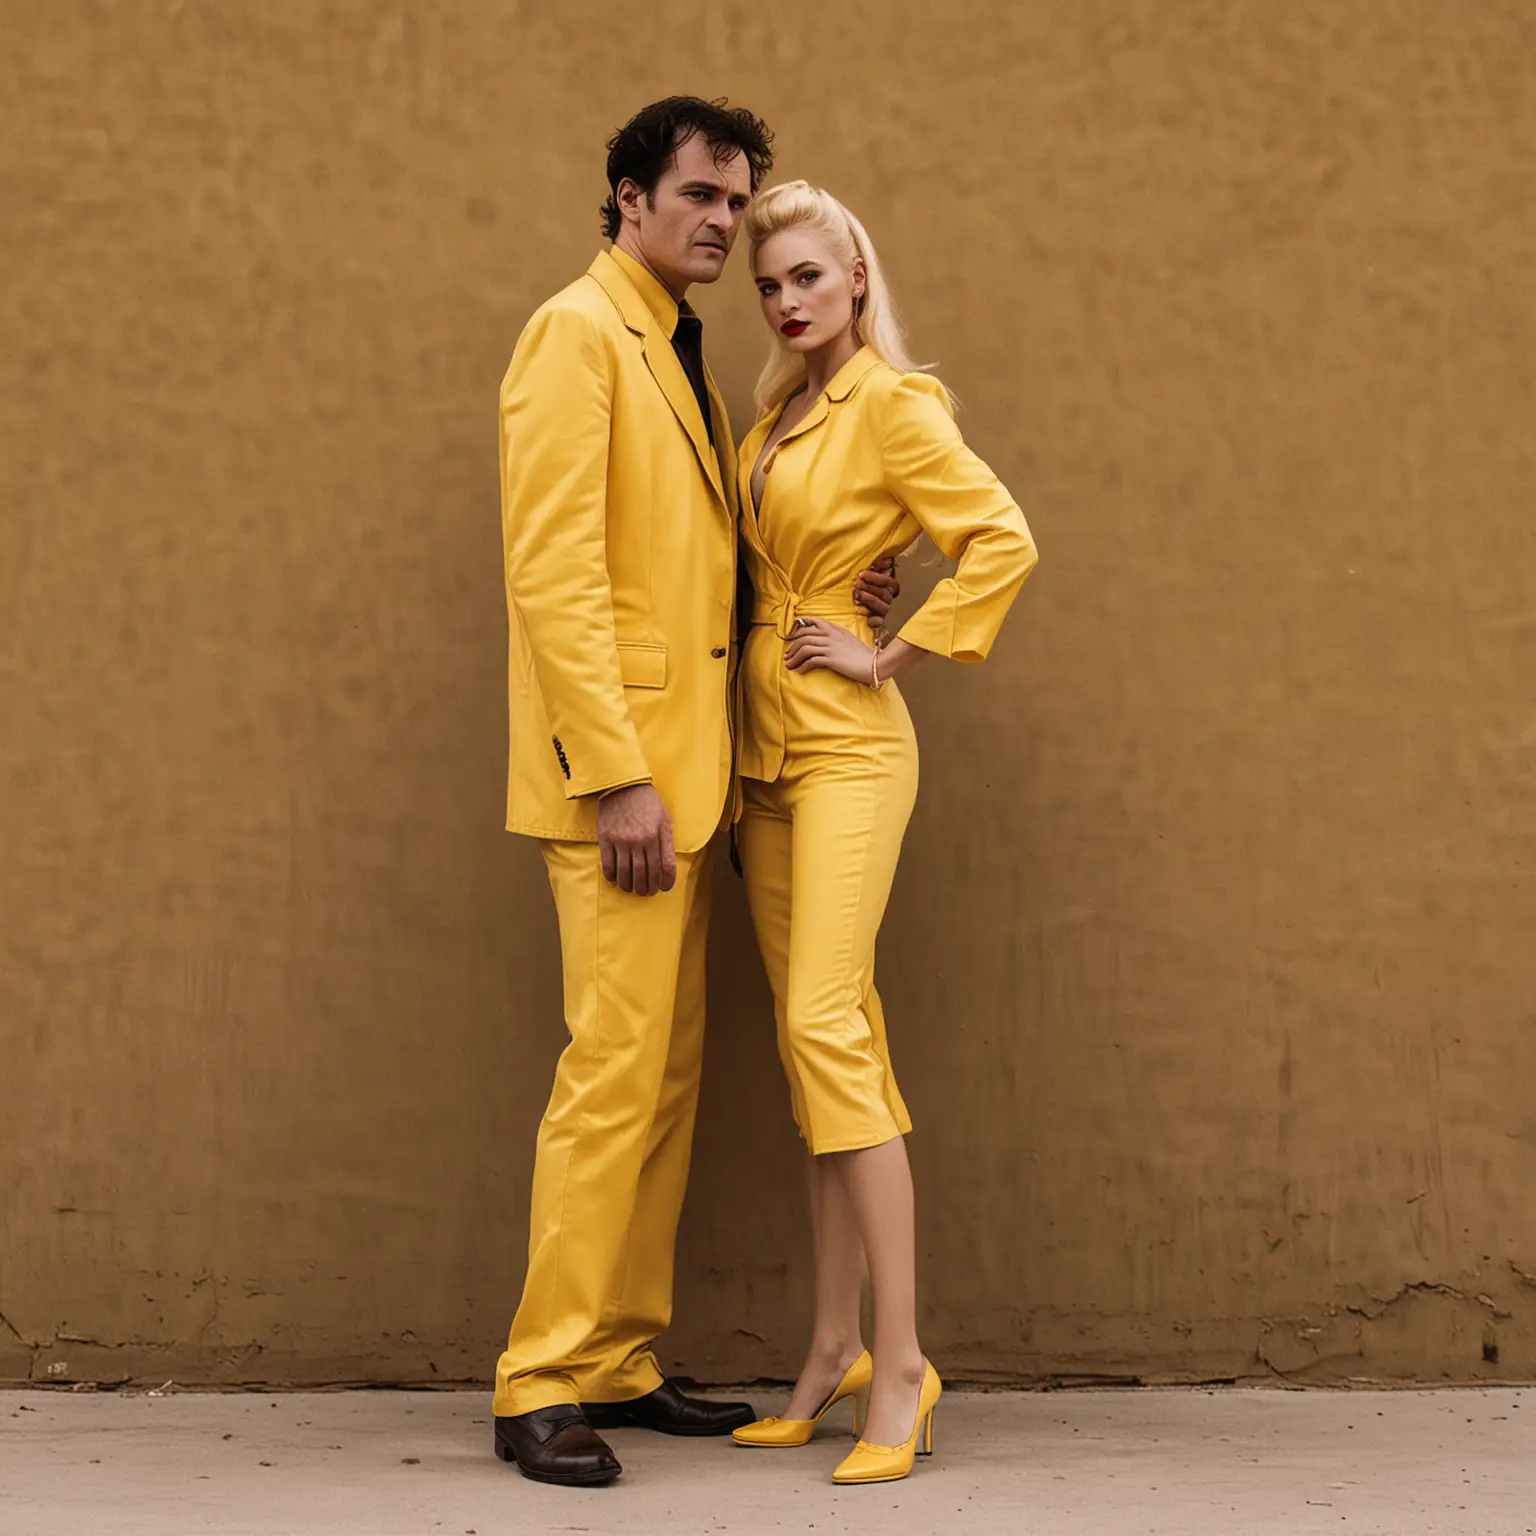 man and woman in yellow tarantino style